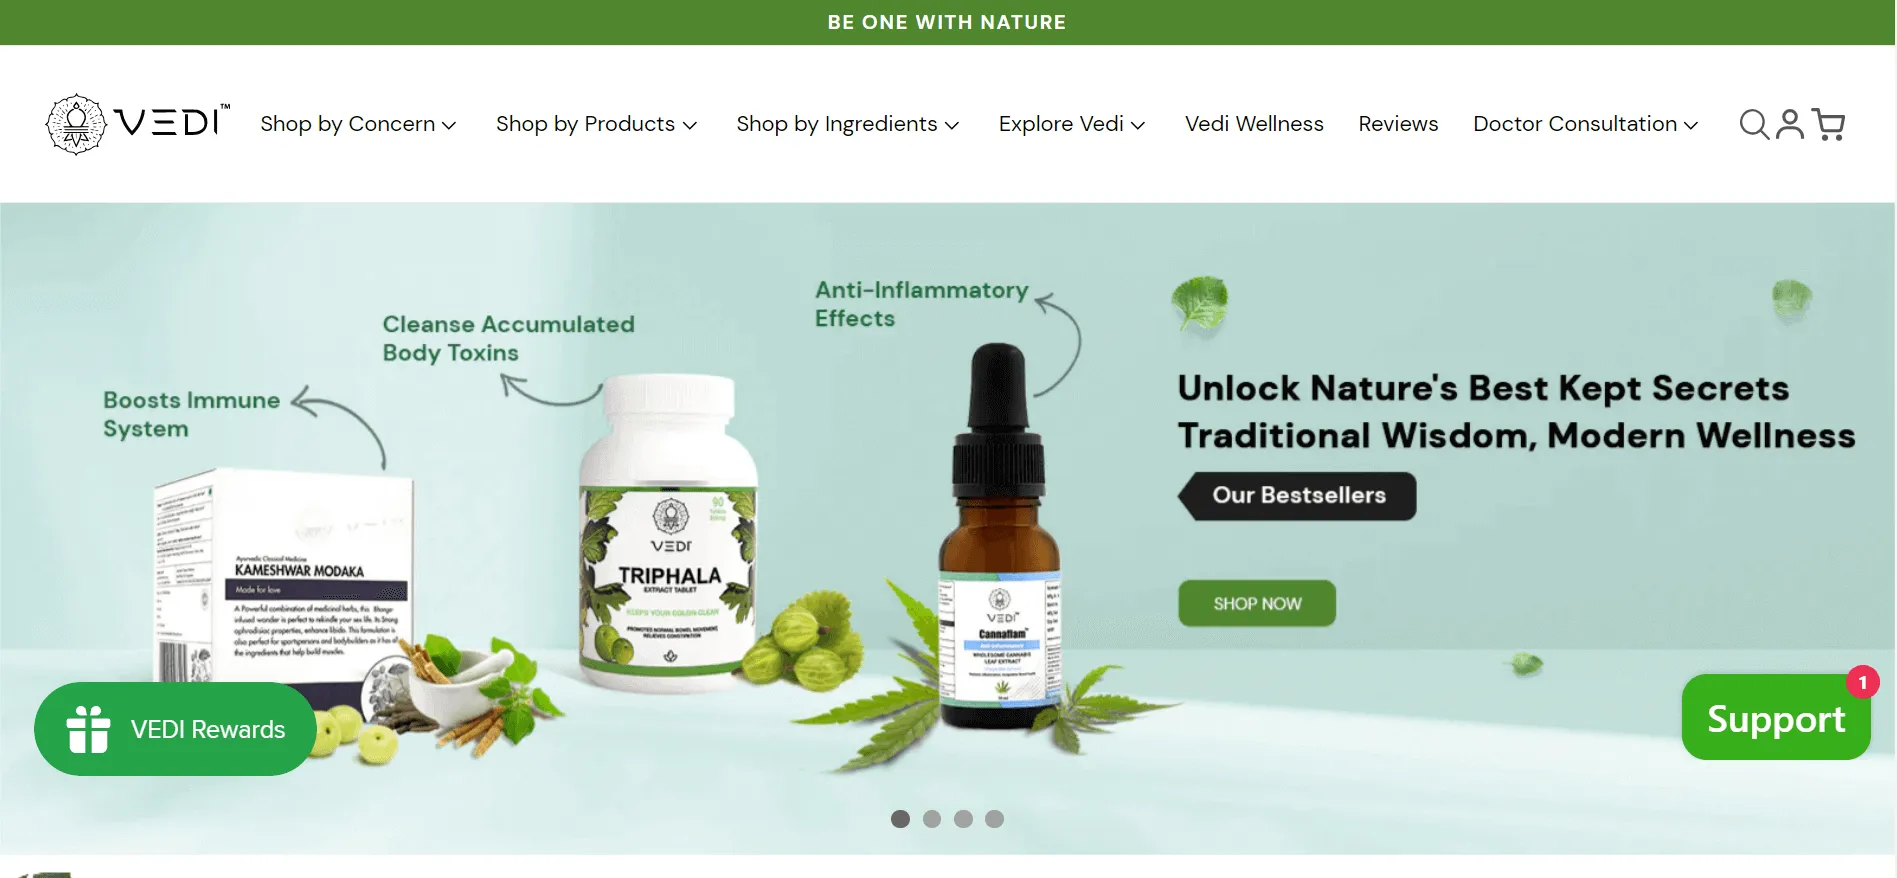 Veda Herbals’ website